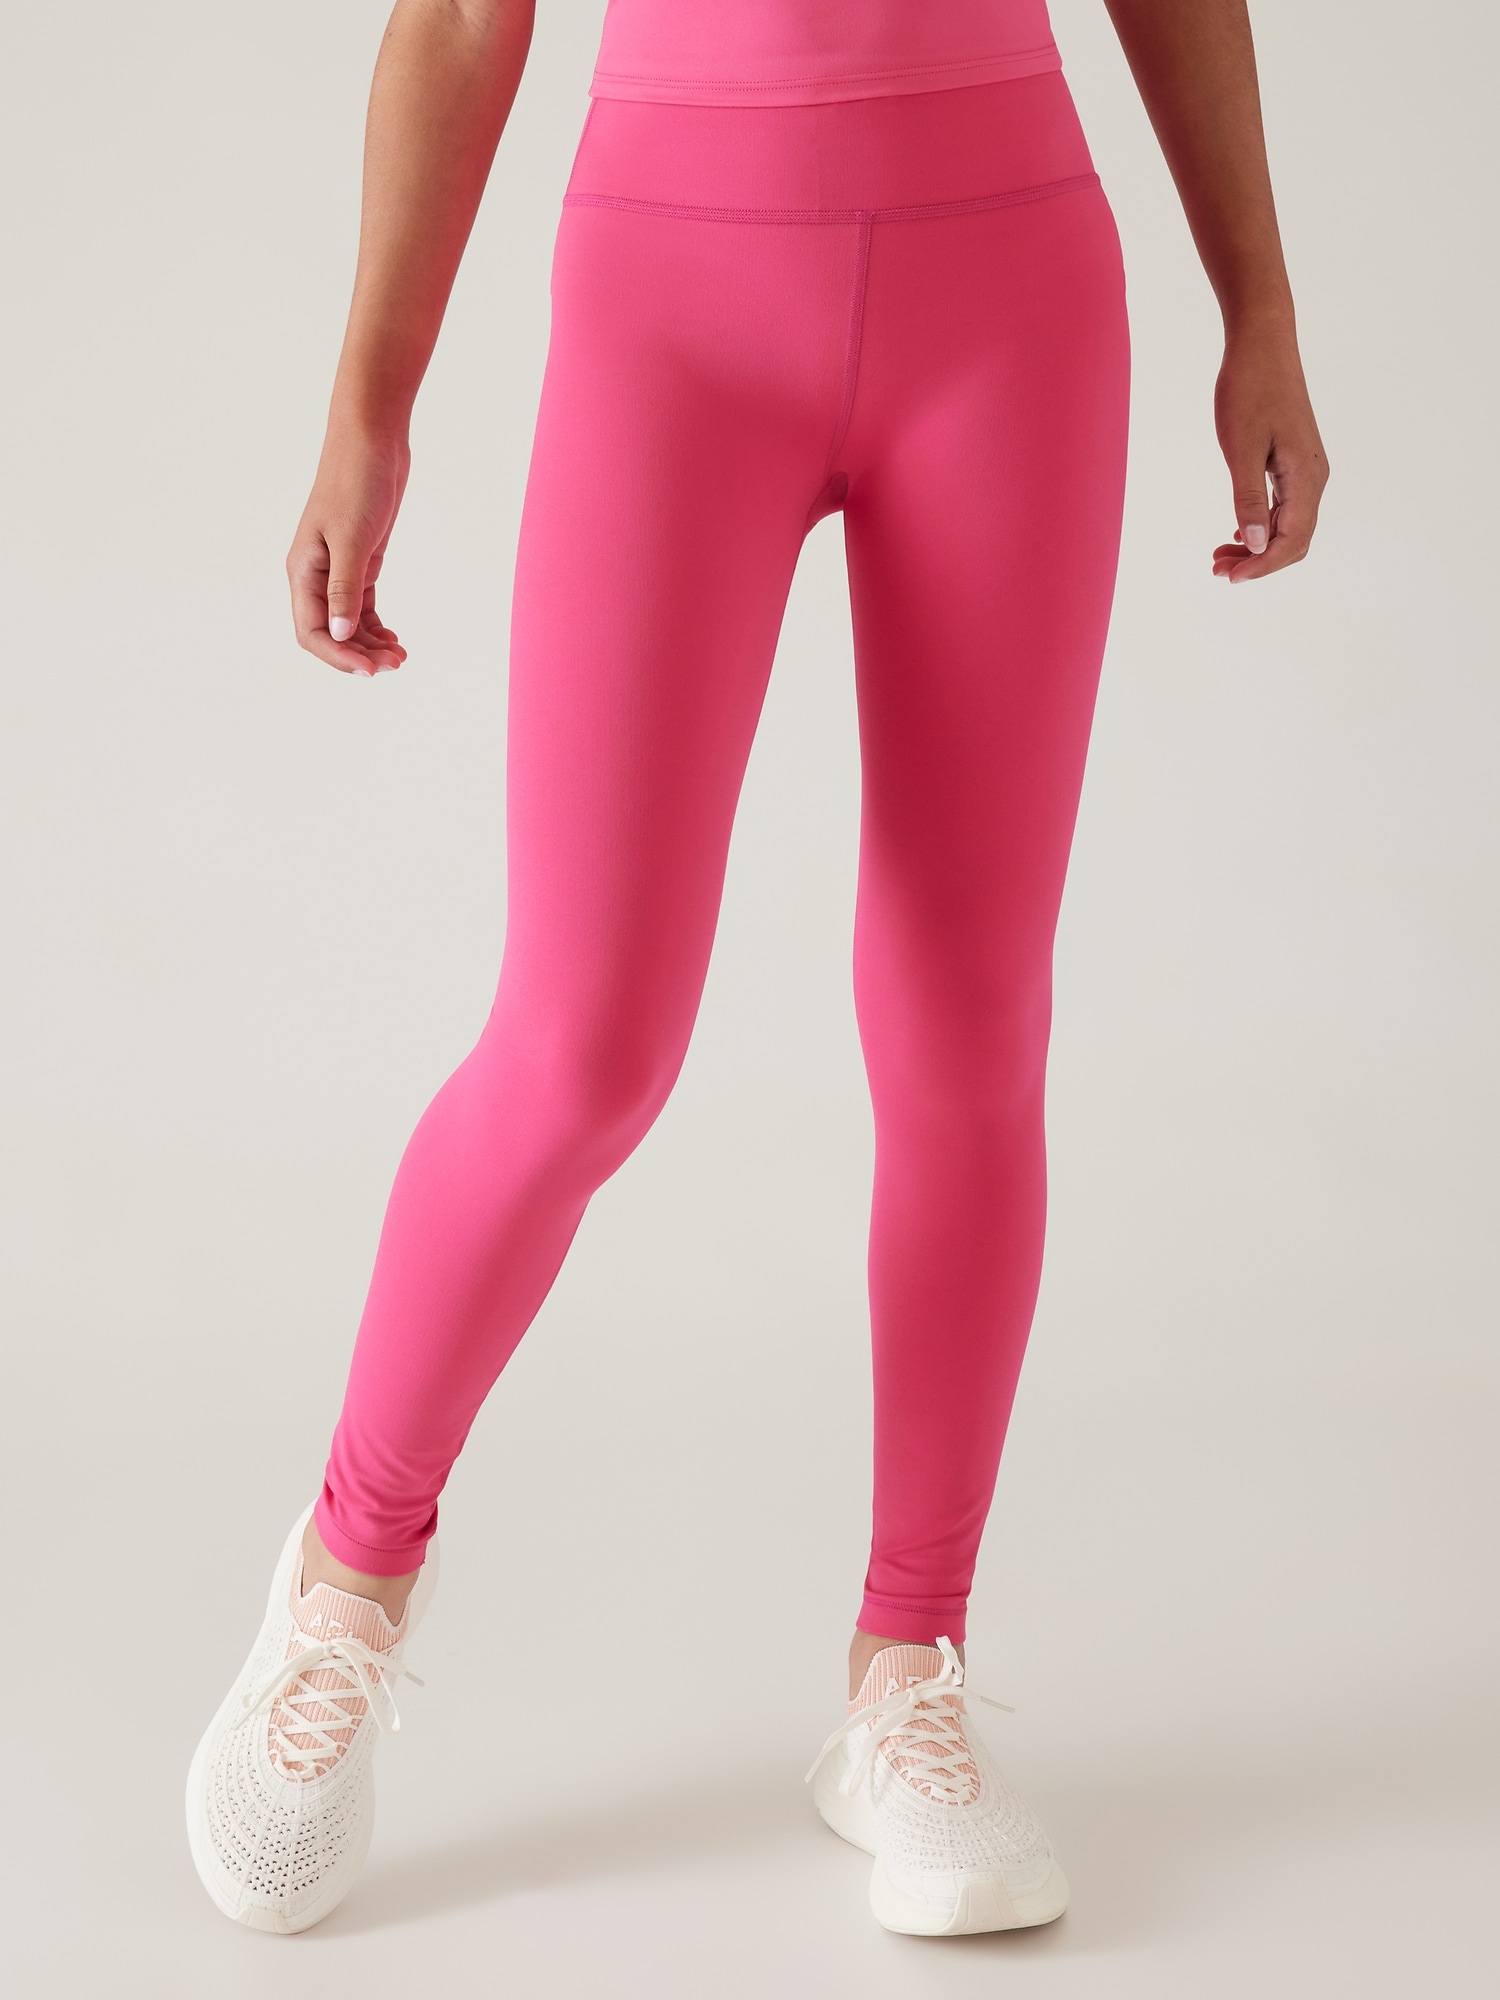 Lululemon Black Pink Dance Studio Crop 20.5 Pants - Size 2 – Le